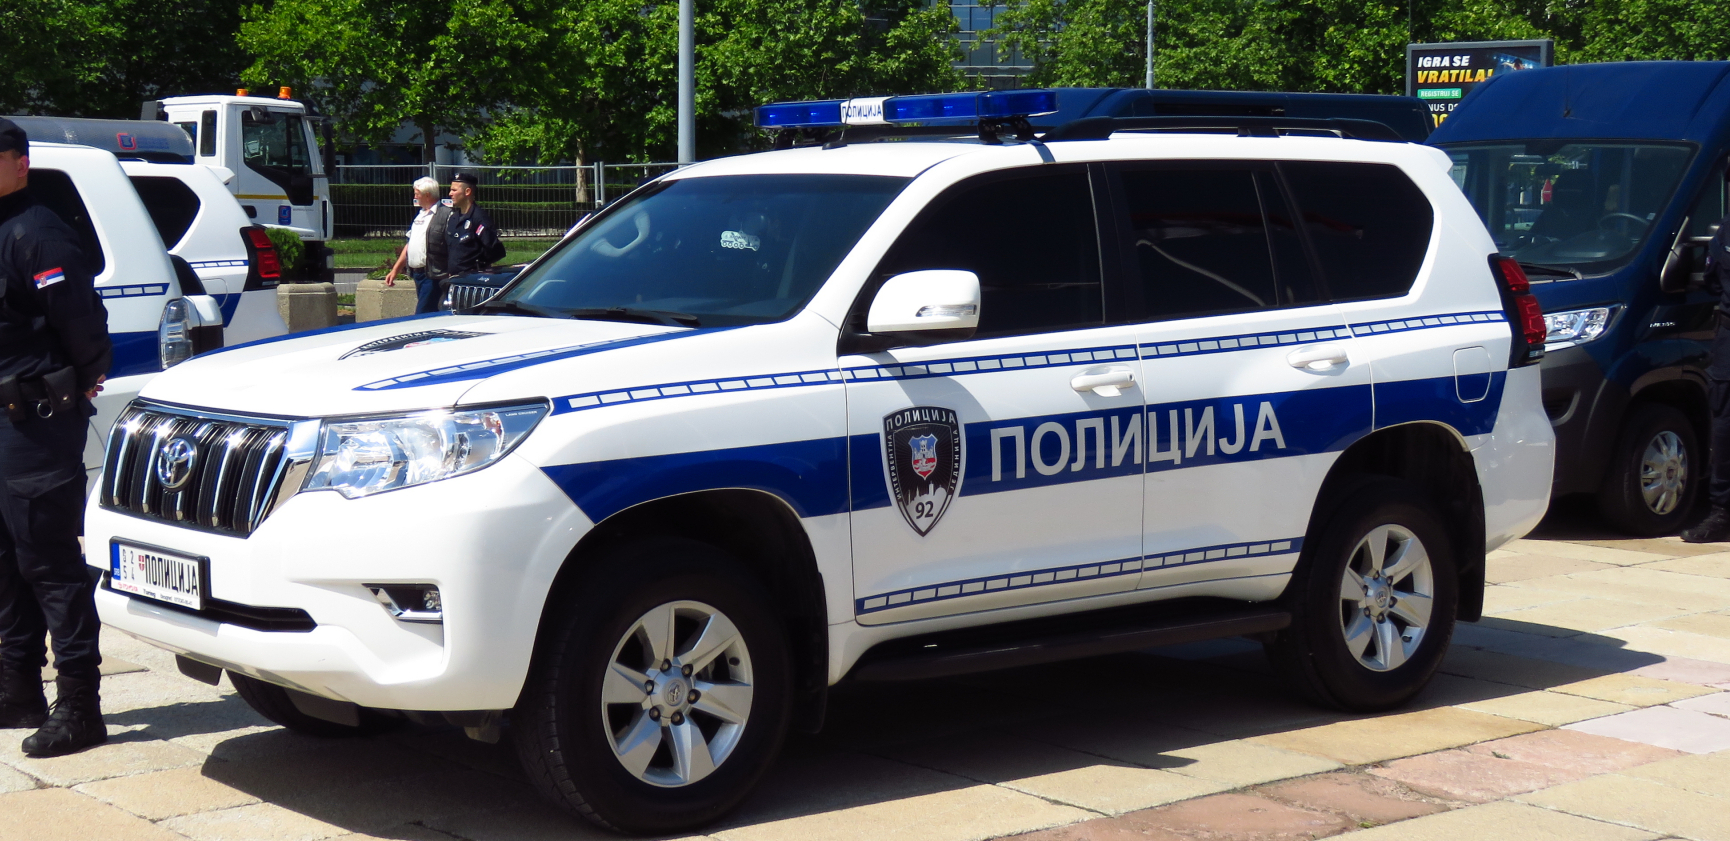 MALOLETNICI UKRALI MOTORE KOJE IM JE POLICIJA ZAPLENILA! Privedeno petoro maloletnika u Novom Pazaru